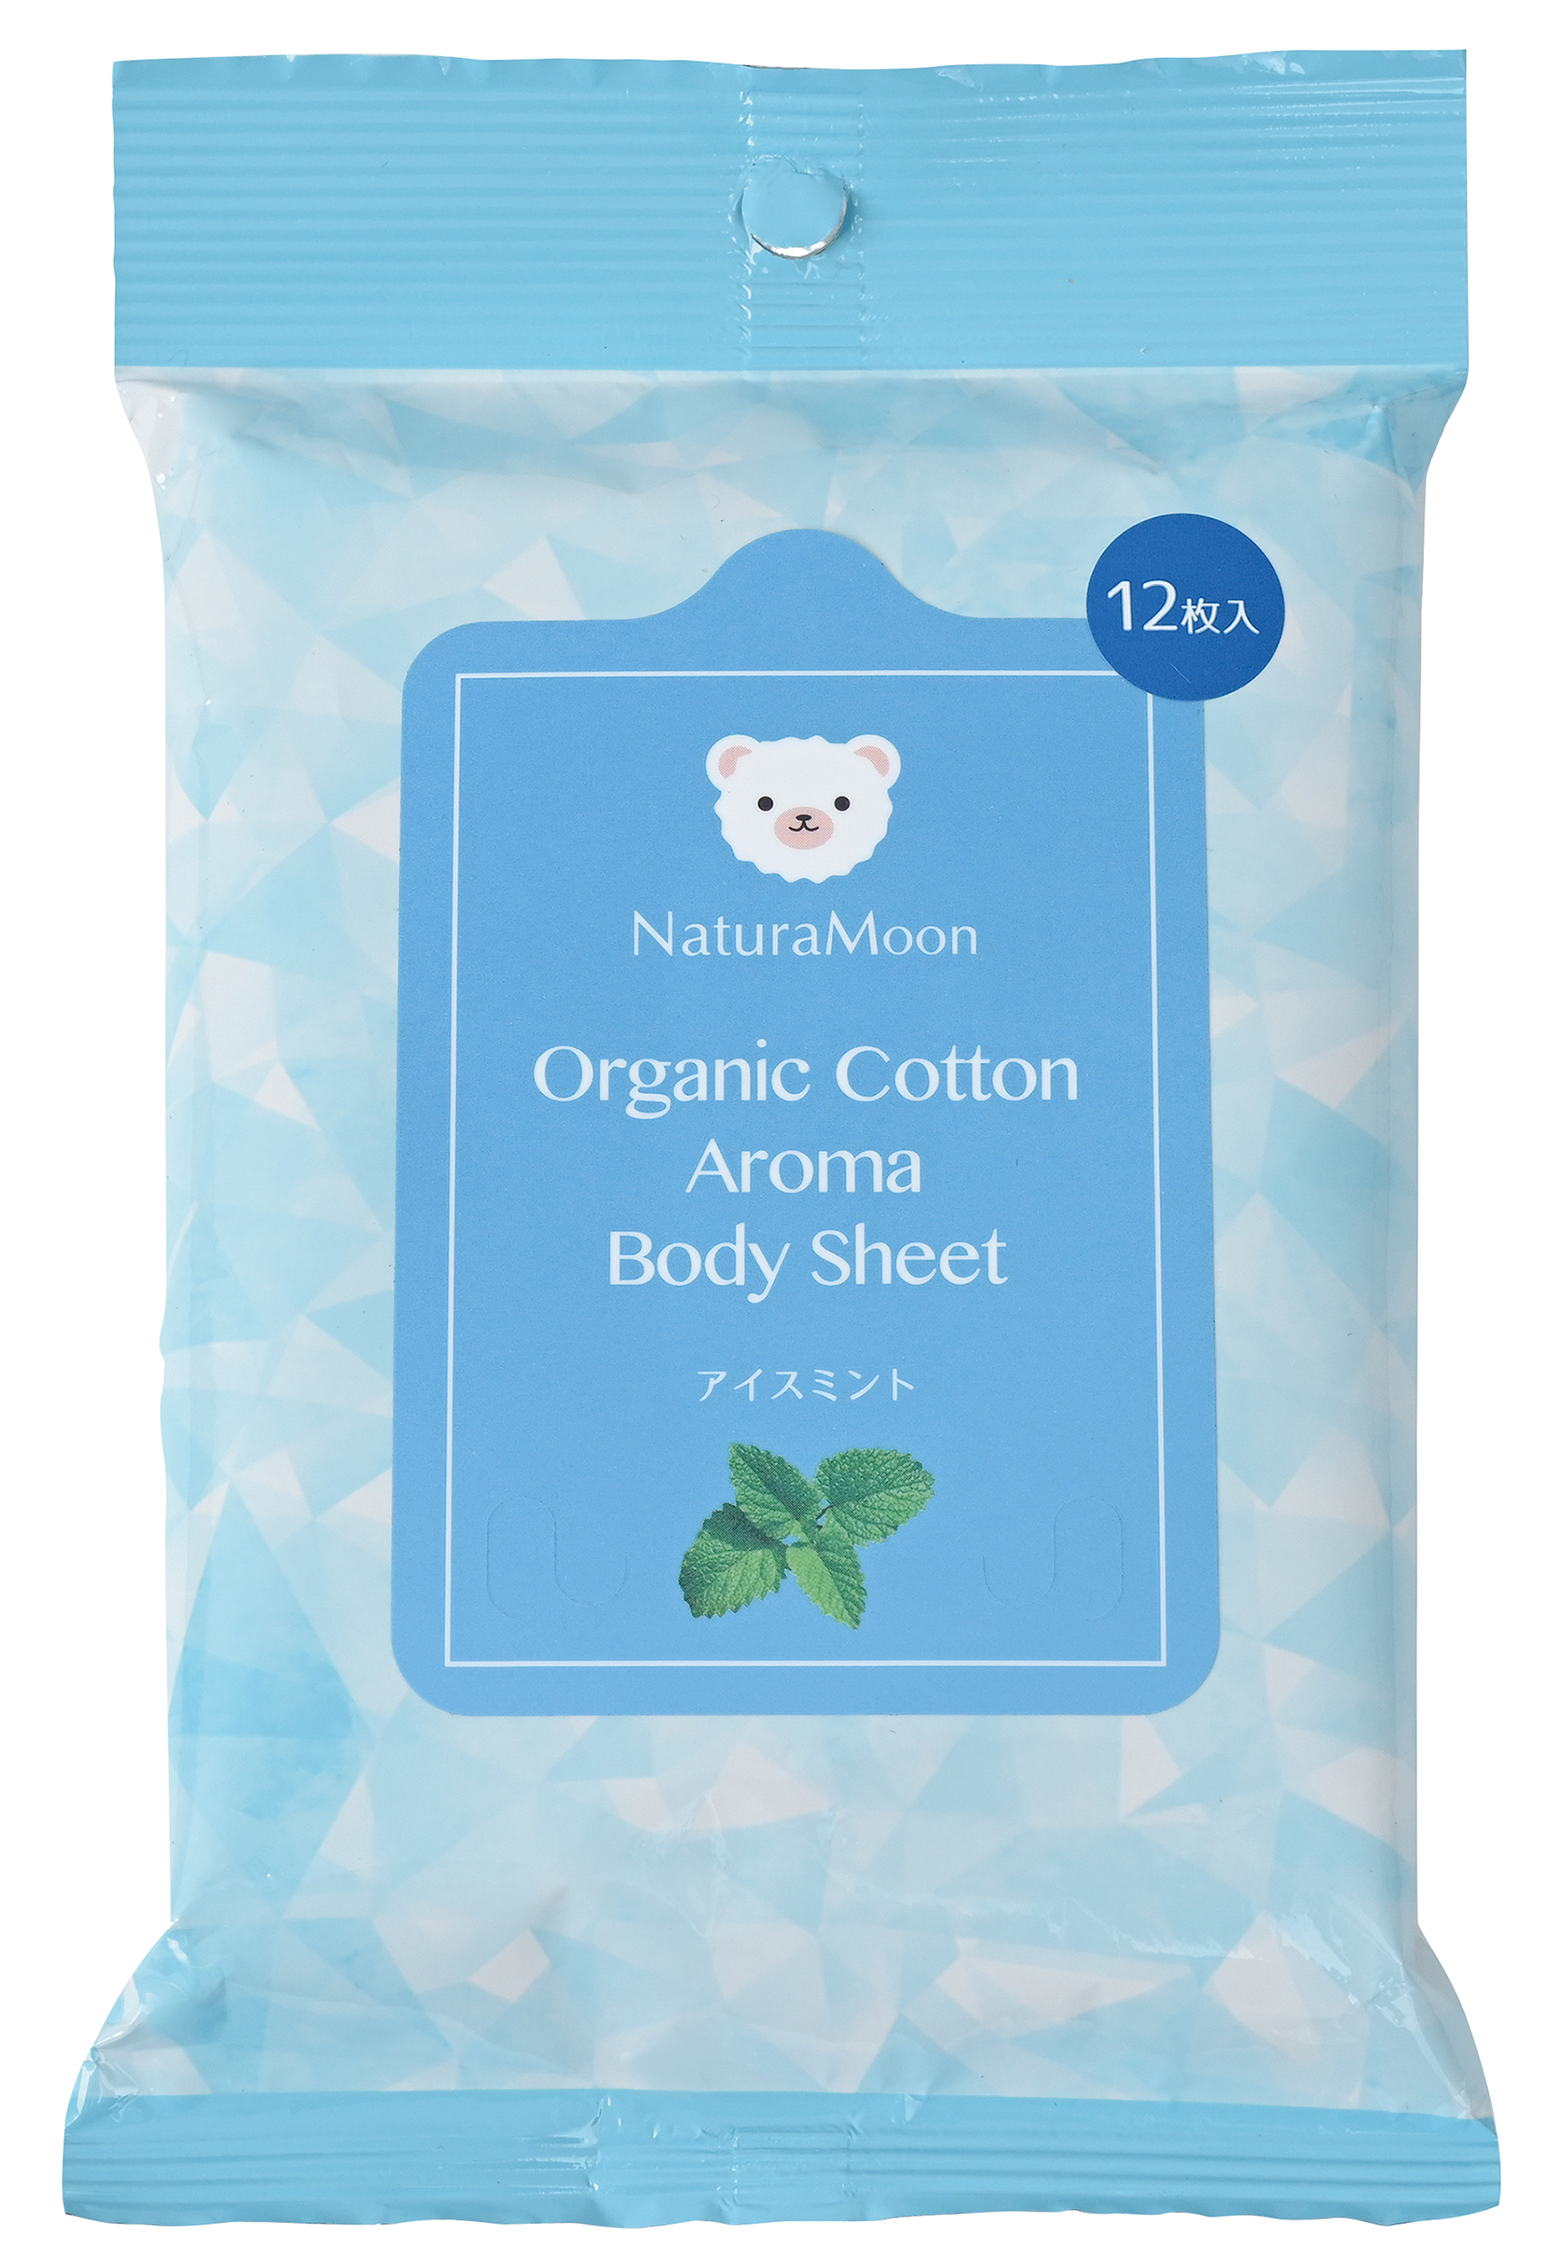 ナチュラムーン オーガニックコットン アロマボディシート(アイスミント)/12枚入【G-Place】 Organic Cotton Aroma Body Sheet